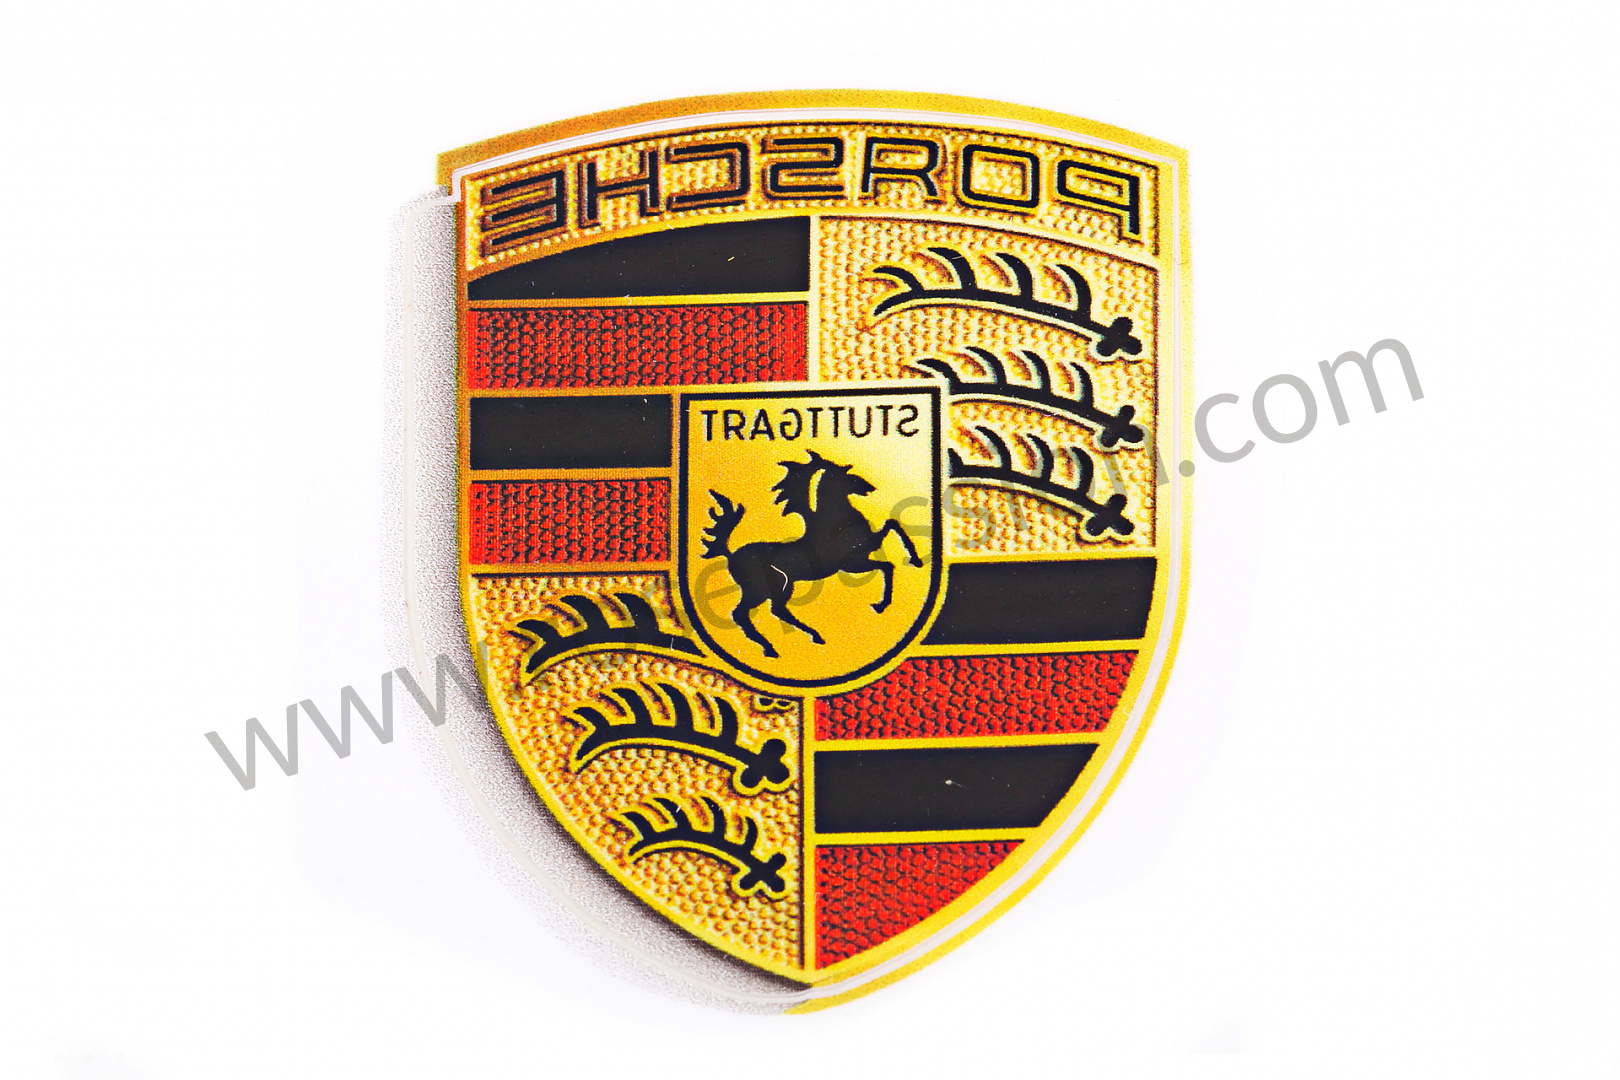 P1392 - WAP013001 - Porsche coat of arms - 4.6 CENTIMETRE for